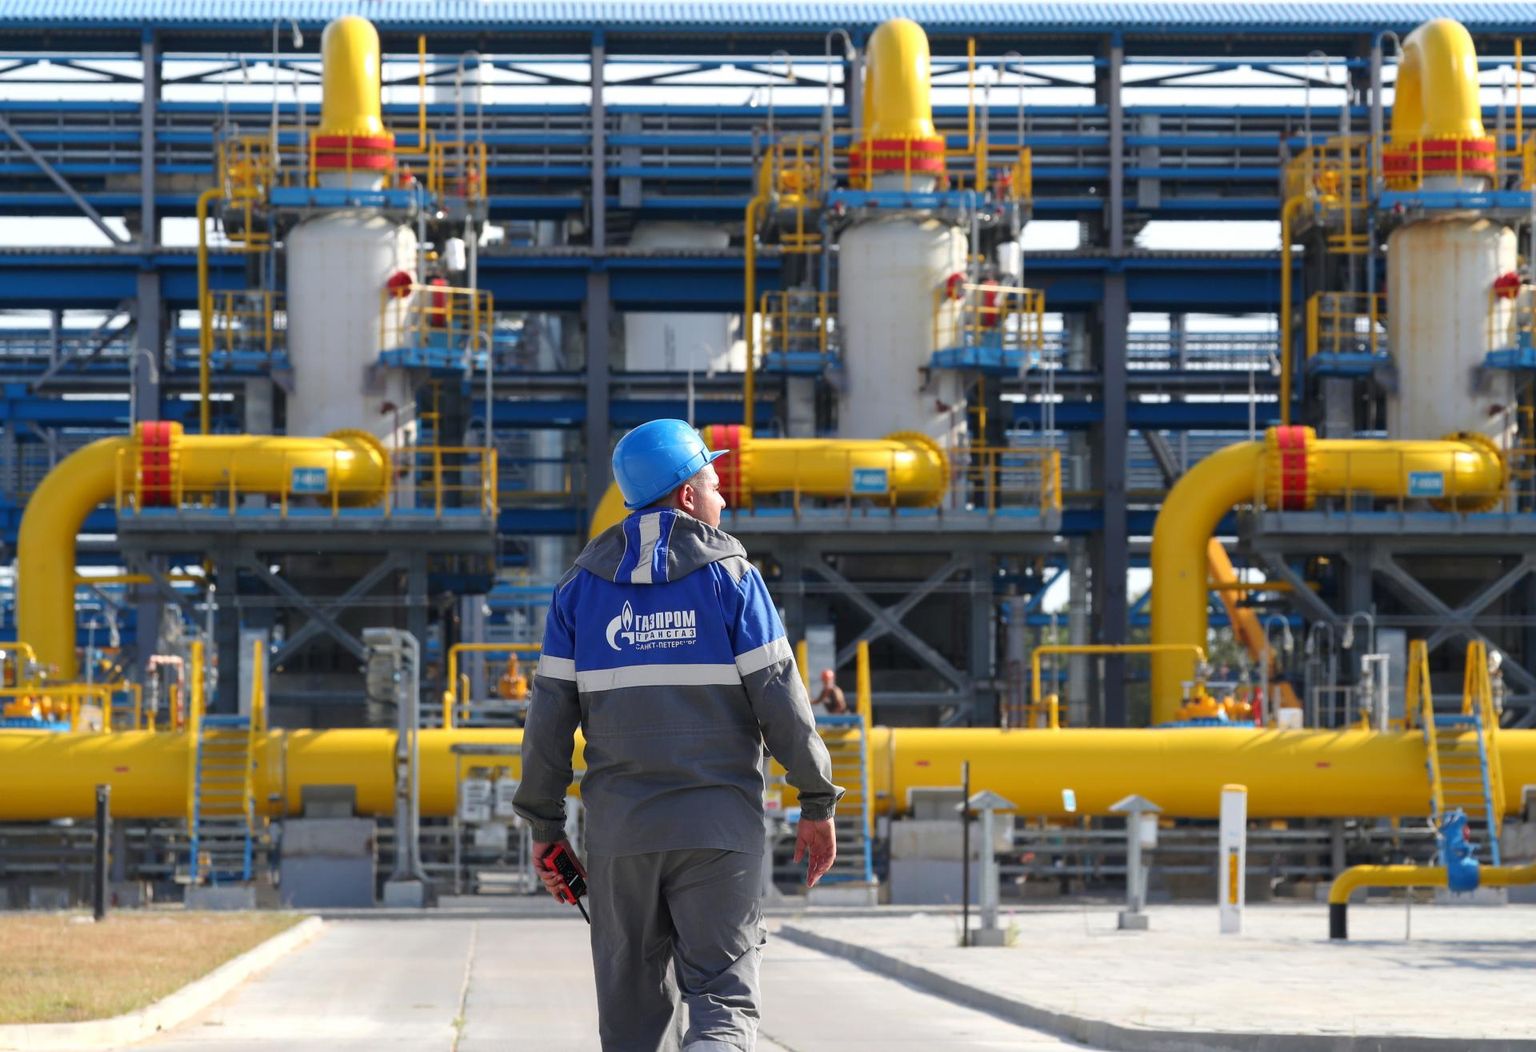 Gazpromile kuuluv Slavjanskaja kompressorjaam Nord Stream 2 alguspunktis. Pilt on tehtud 27.7.2021. 